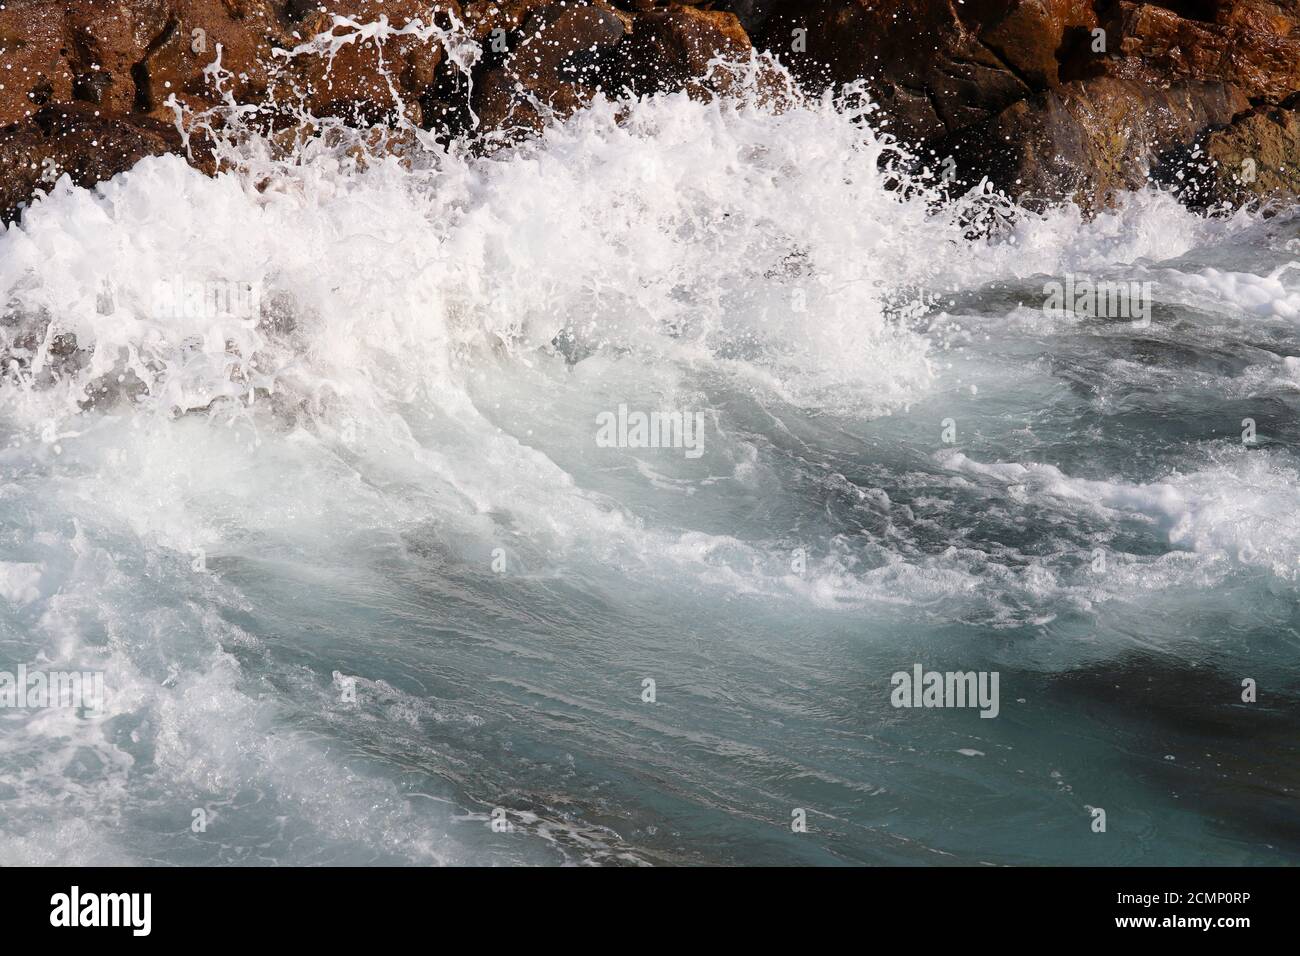 Le onde si infrangono sulle rocce sul mare. Acqua schiumosa pulita su pietre, tempesta di mare Foto Stock